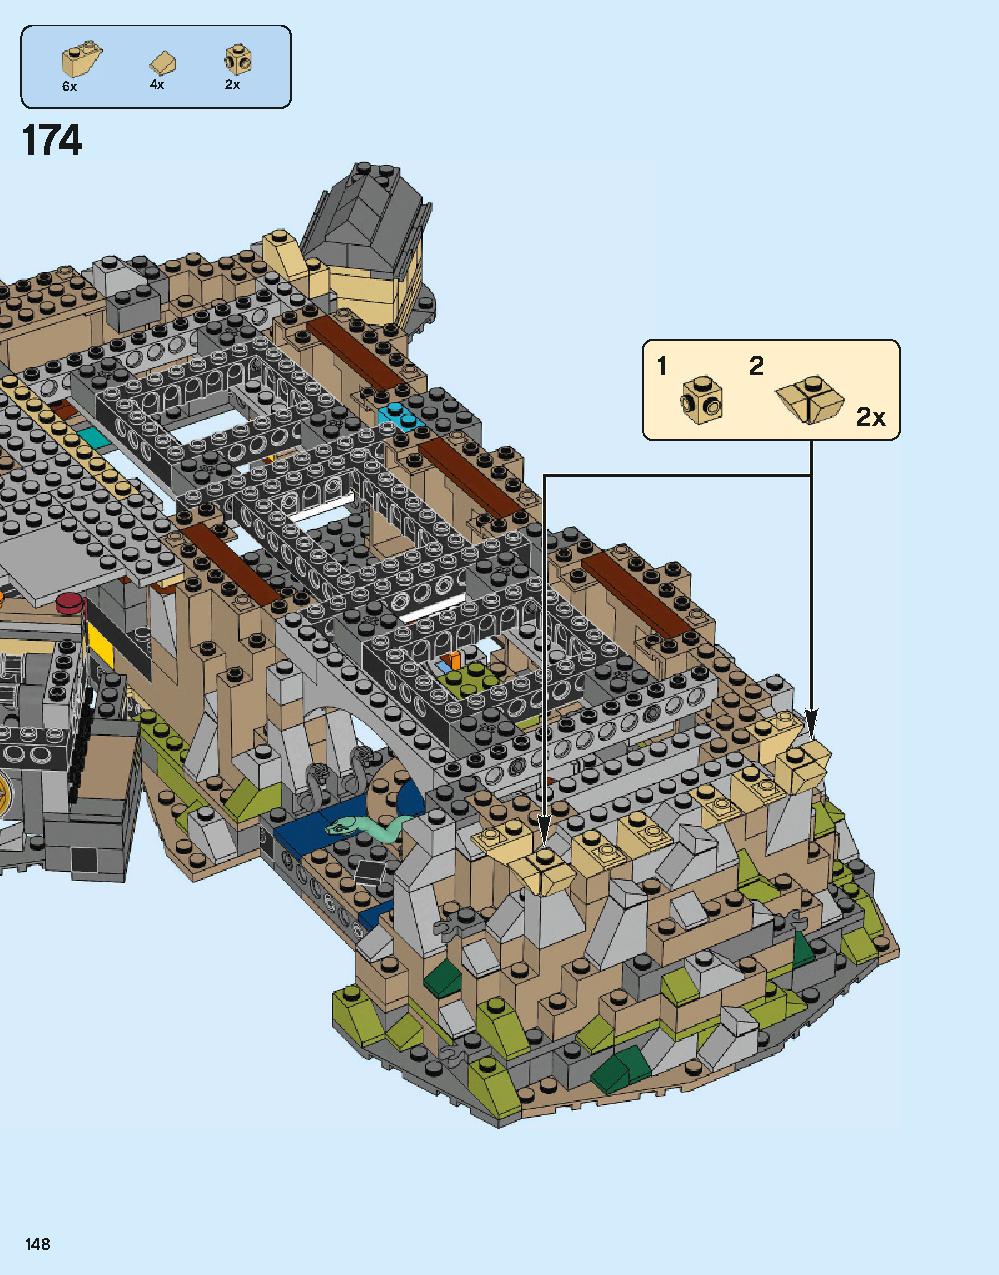 ホグワーツ城 71043 レゴの商品情報 レゴの説明書・組立方法 148 page